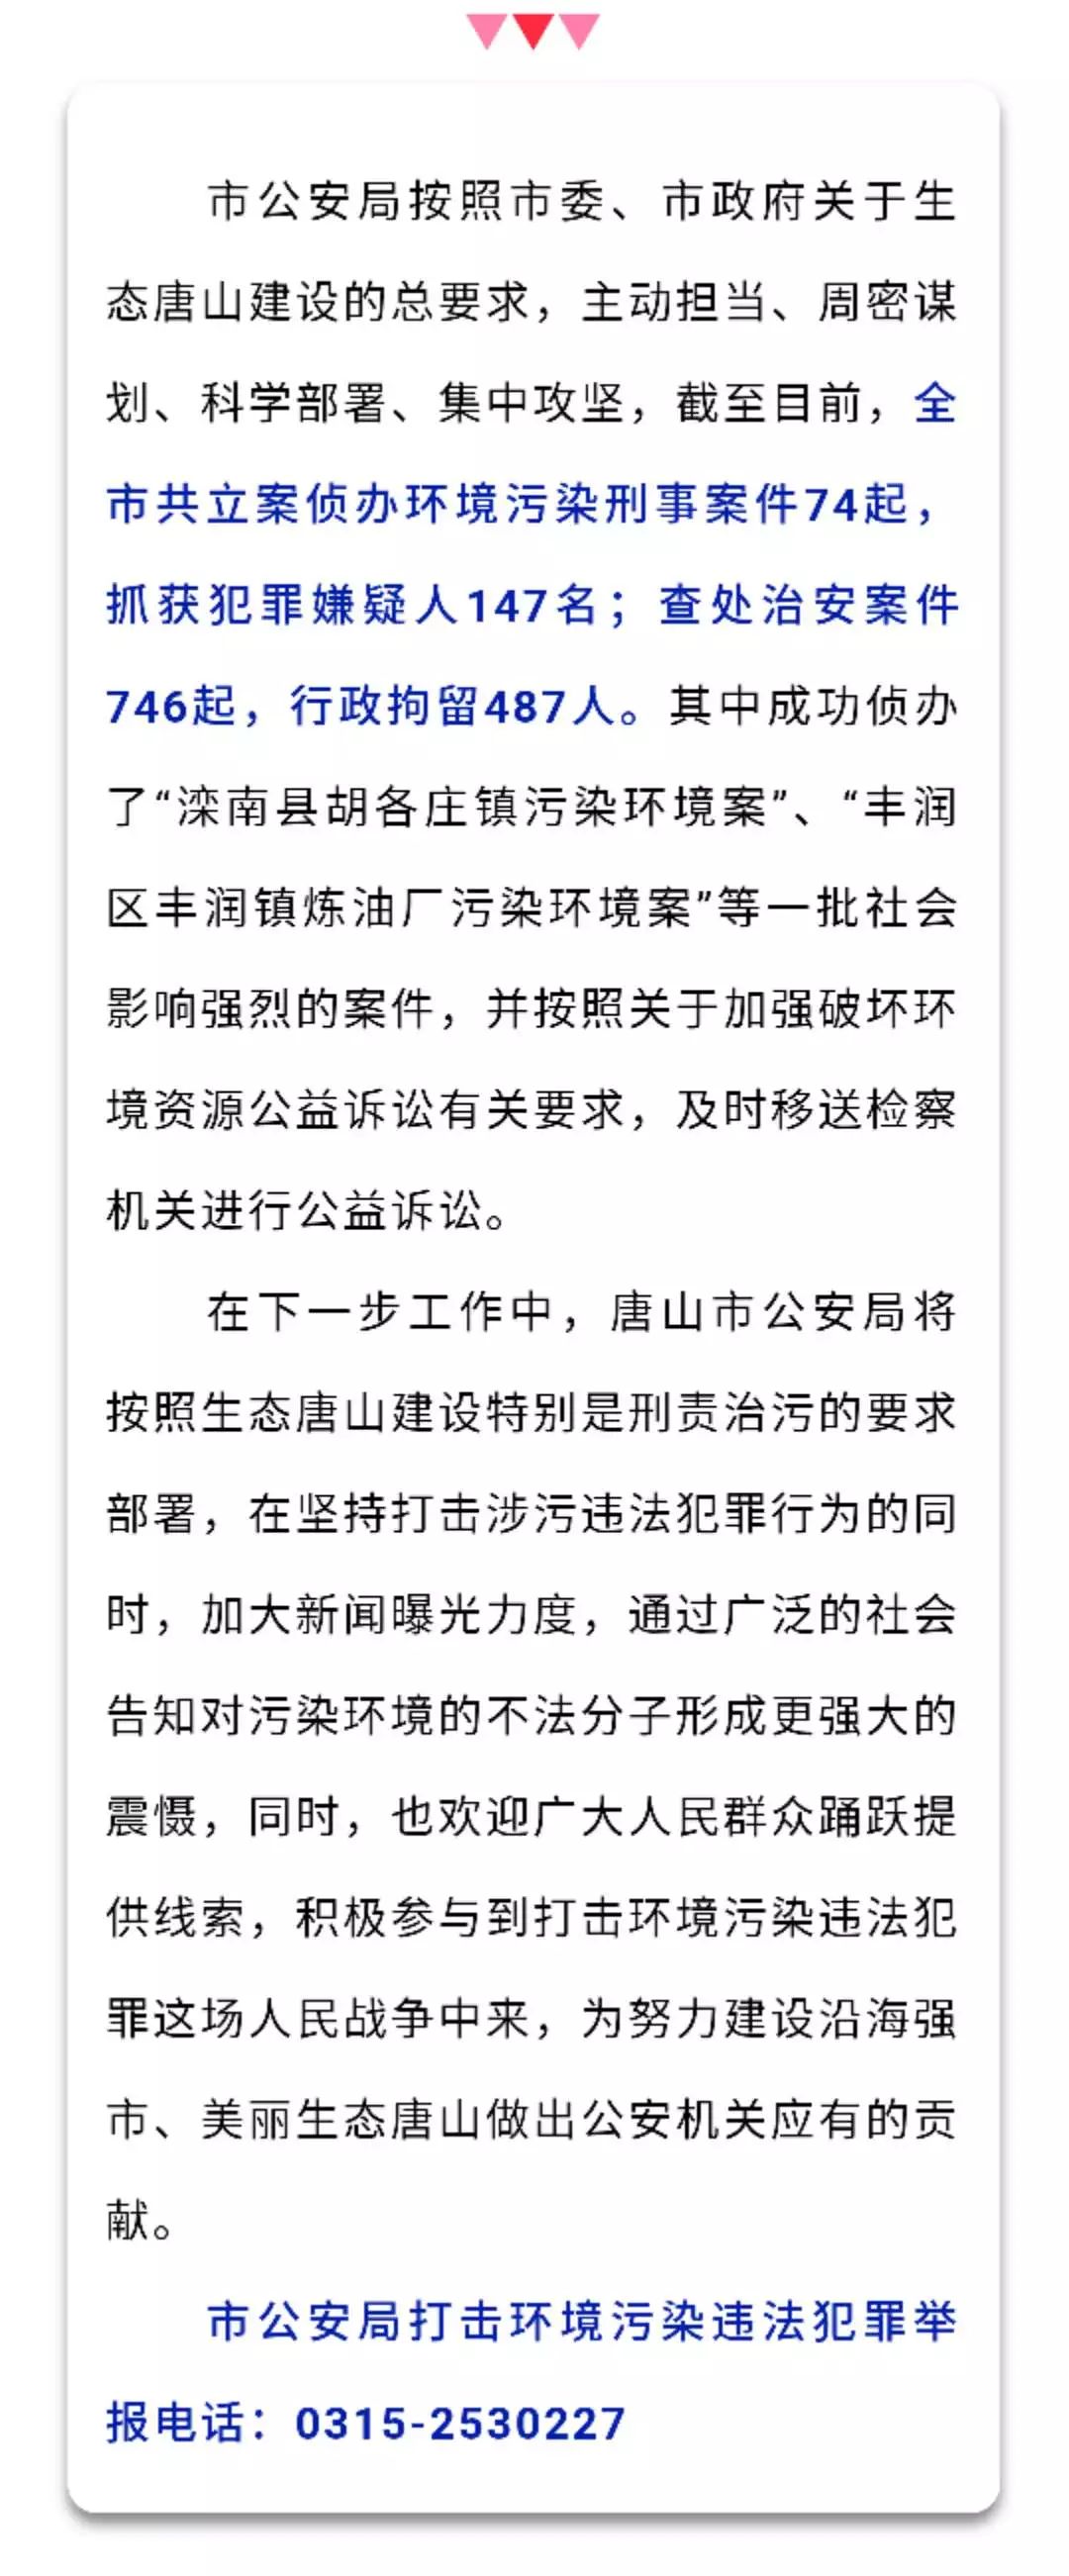 唐山通报5起污染环境典型案例:抓获147人,行拘